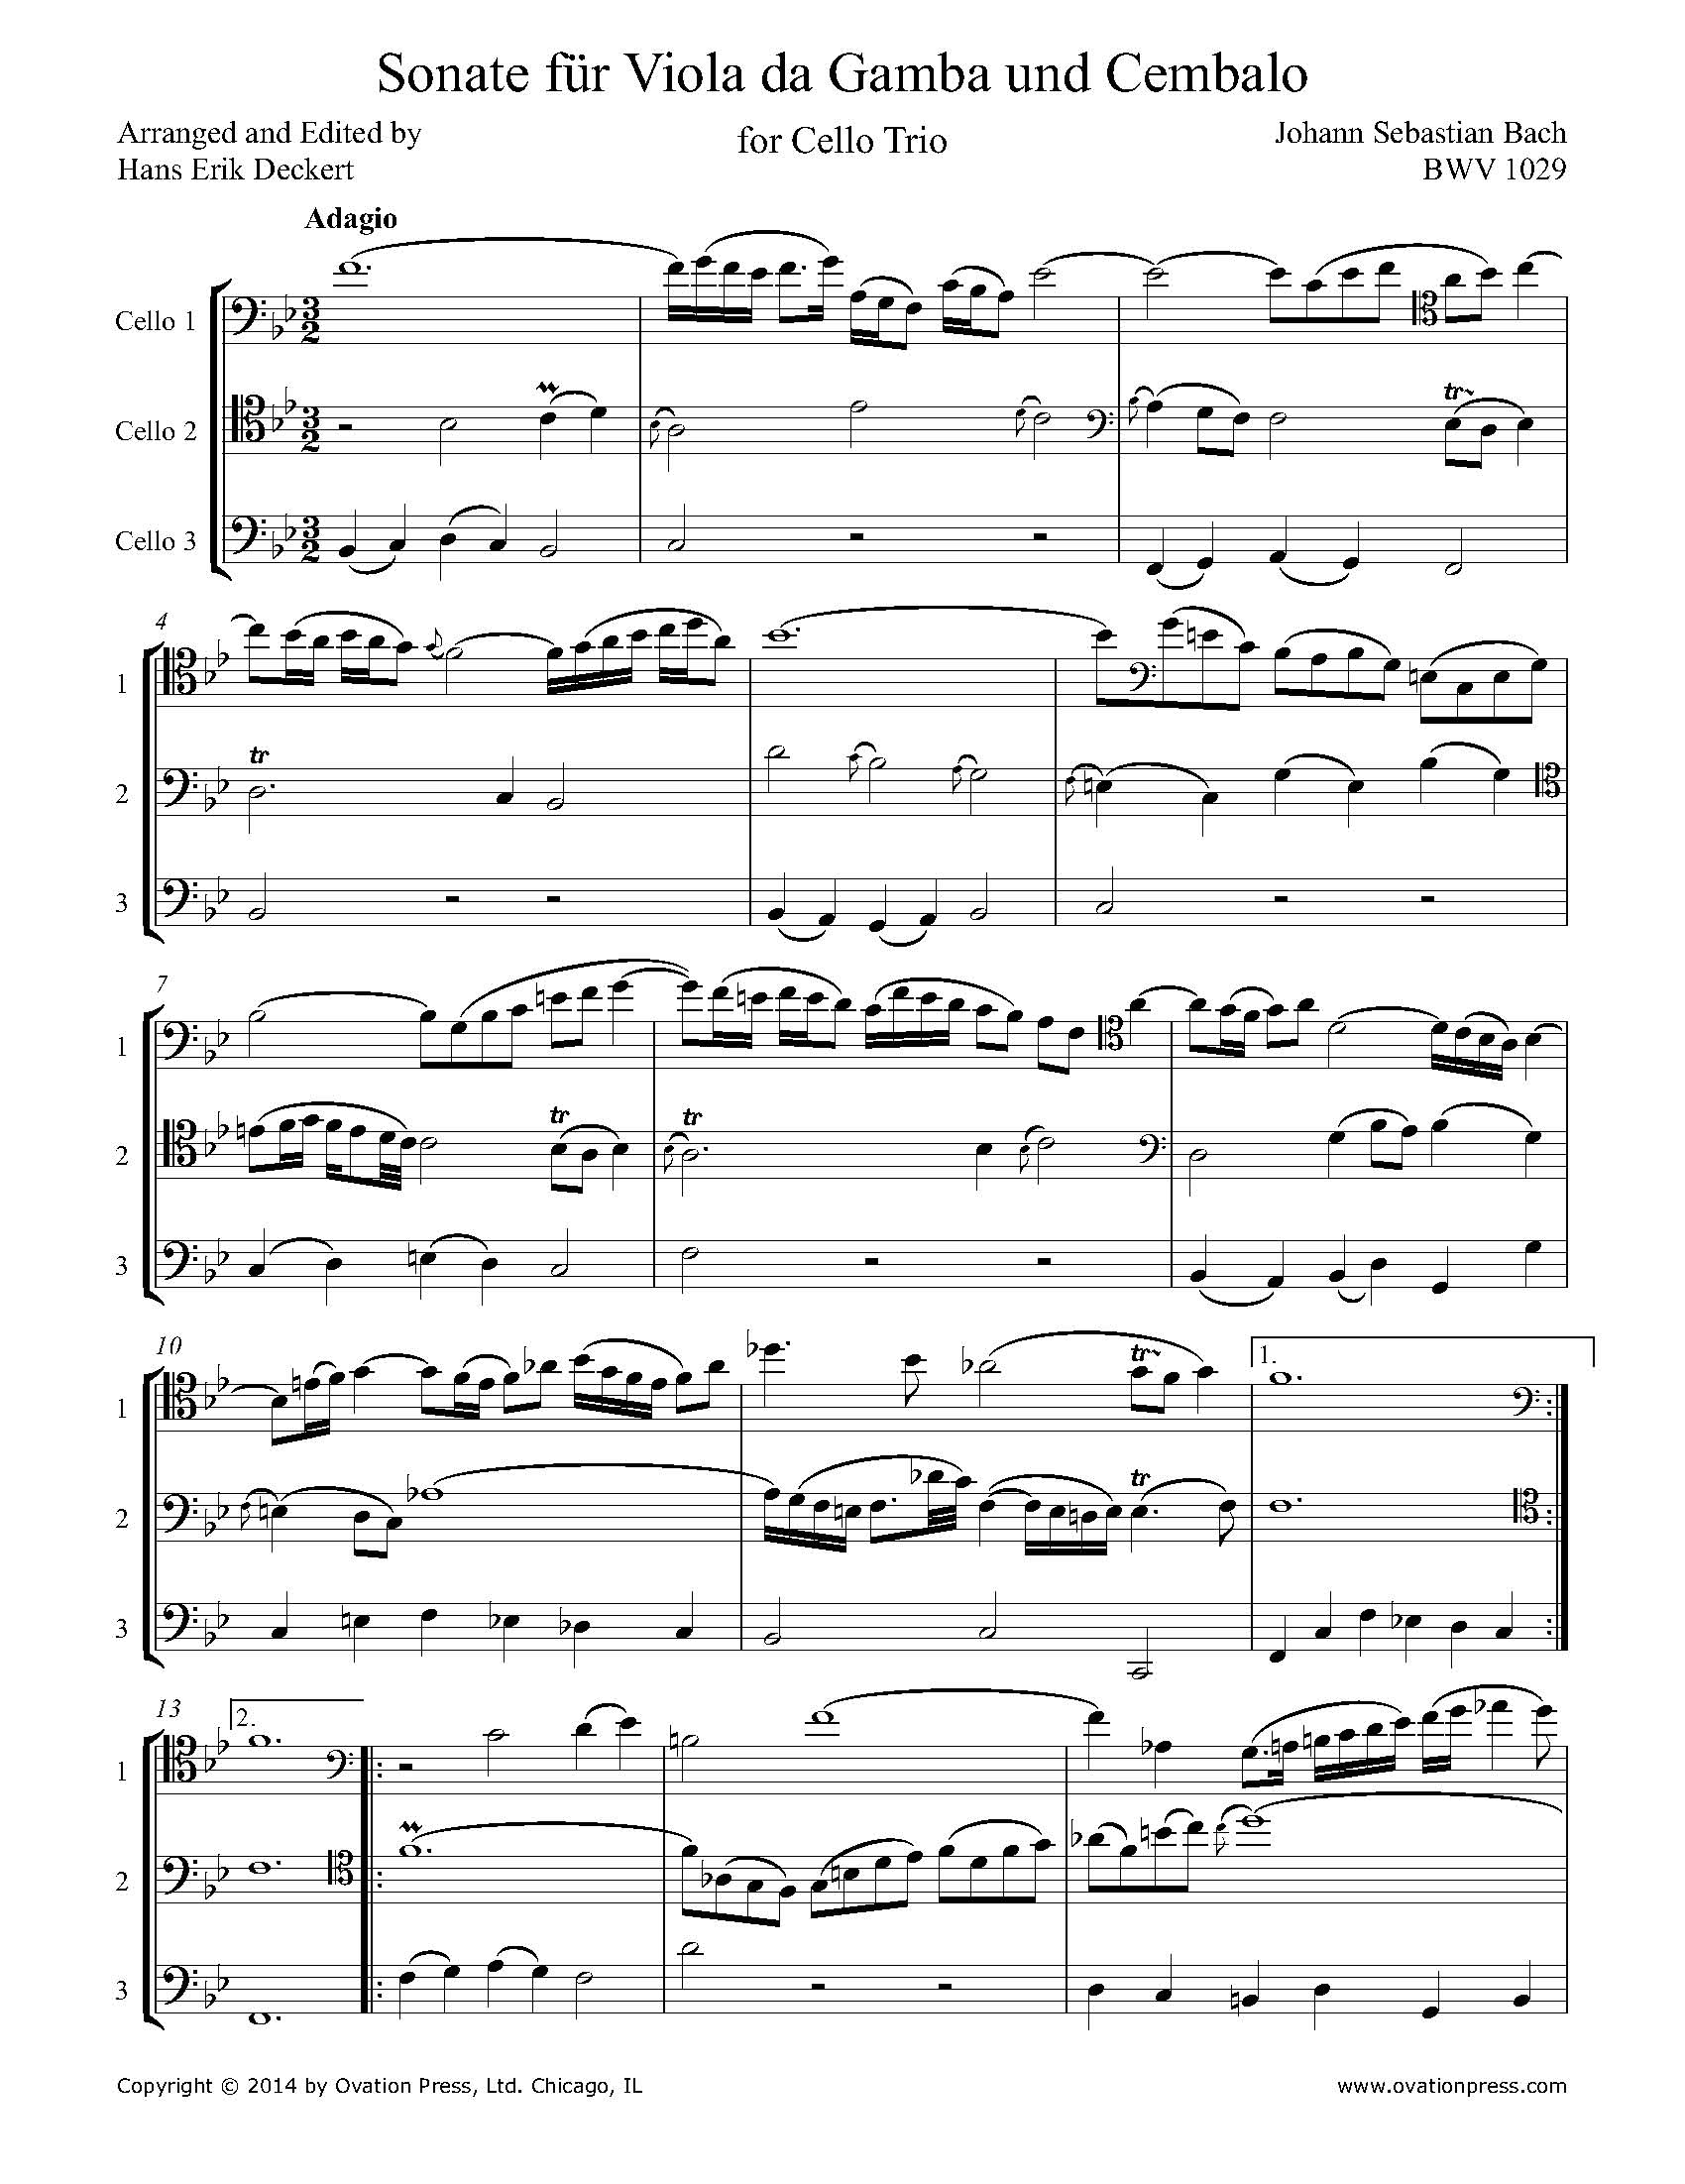 Bach Adagio from Sonate für Viola da Gamba und Cembalo BWV 1029 (for Cello Trio)